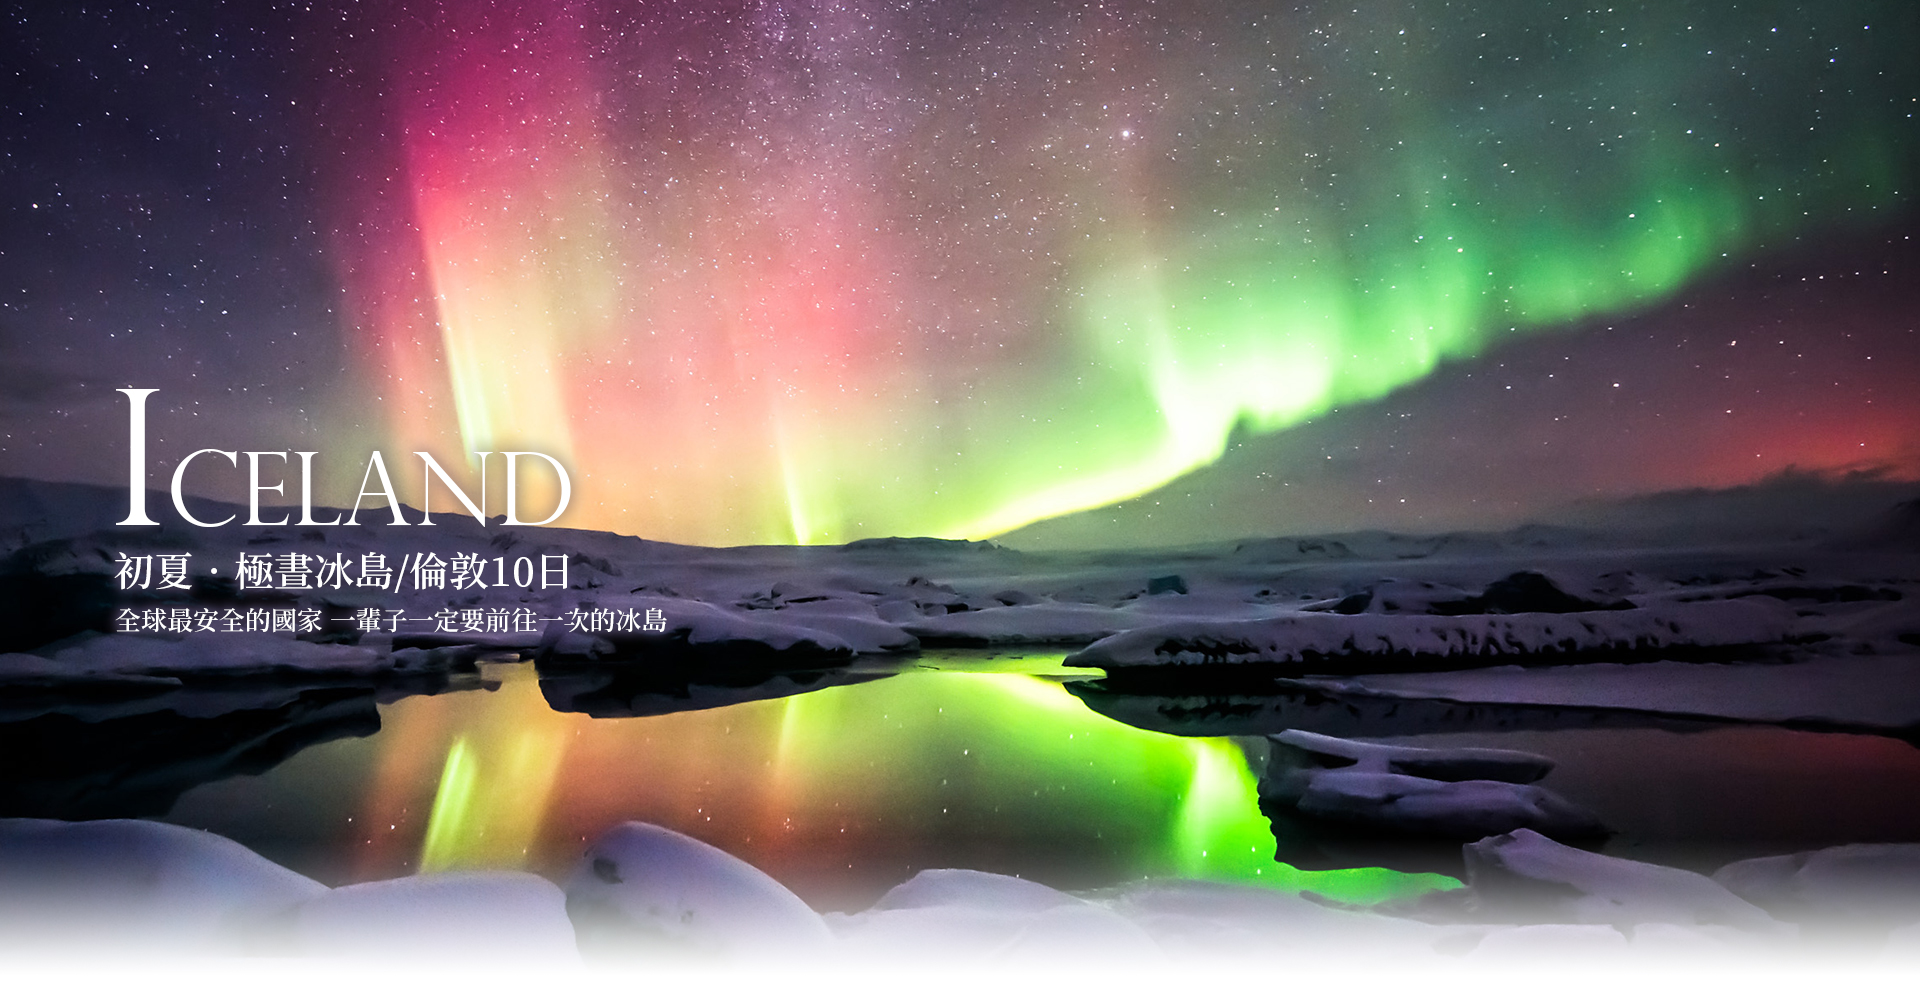 歐洲蜜月 歐洲旅遊  北歐旅遊  歐洲蜜月推薦  冰島旅行 看極光 極光之旅 北歐極光 冰島極光